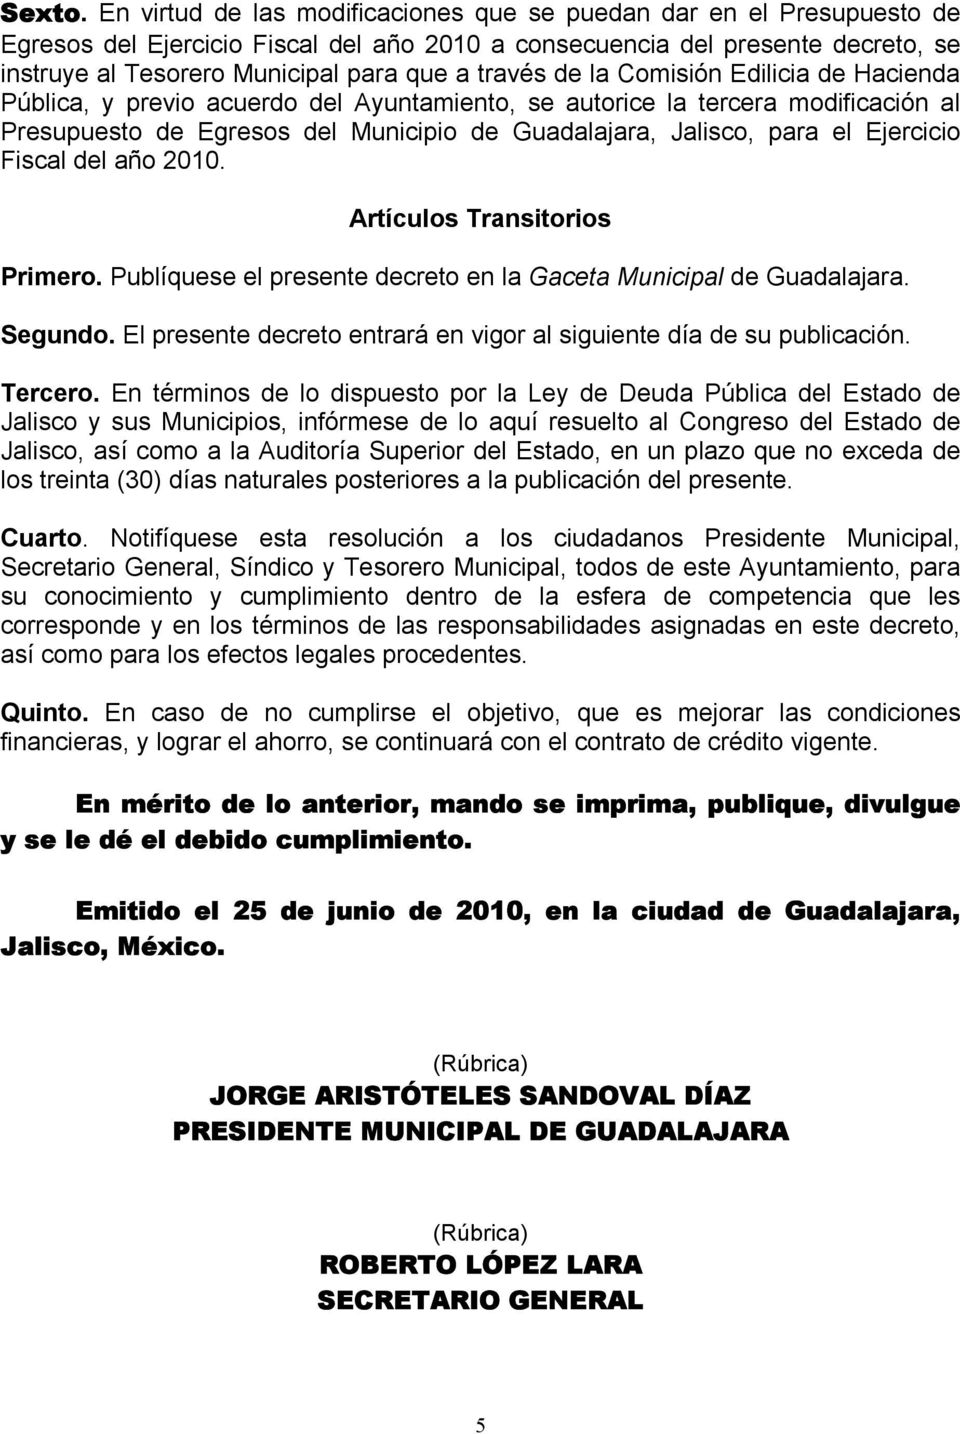 través de la Comisión Edilicia de Hacienda Pública, y previo acuerdo del Ayuntamiento, se autorice la tercera modificación al Presupuesto de Egresos del Municipio de Guadalajara, Jalisco, para el